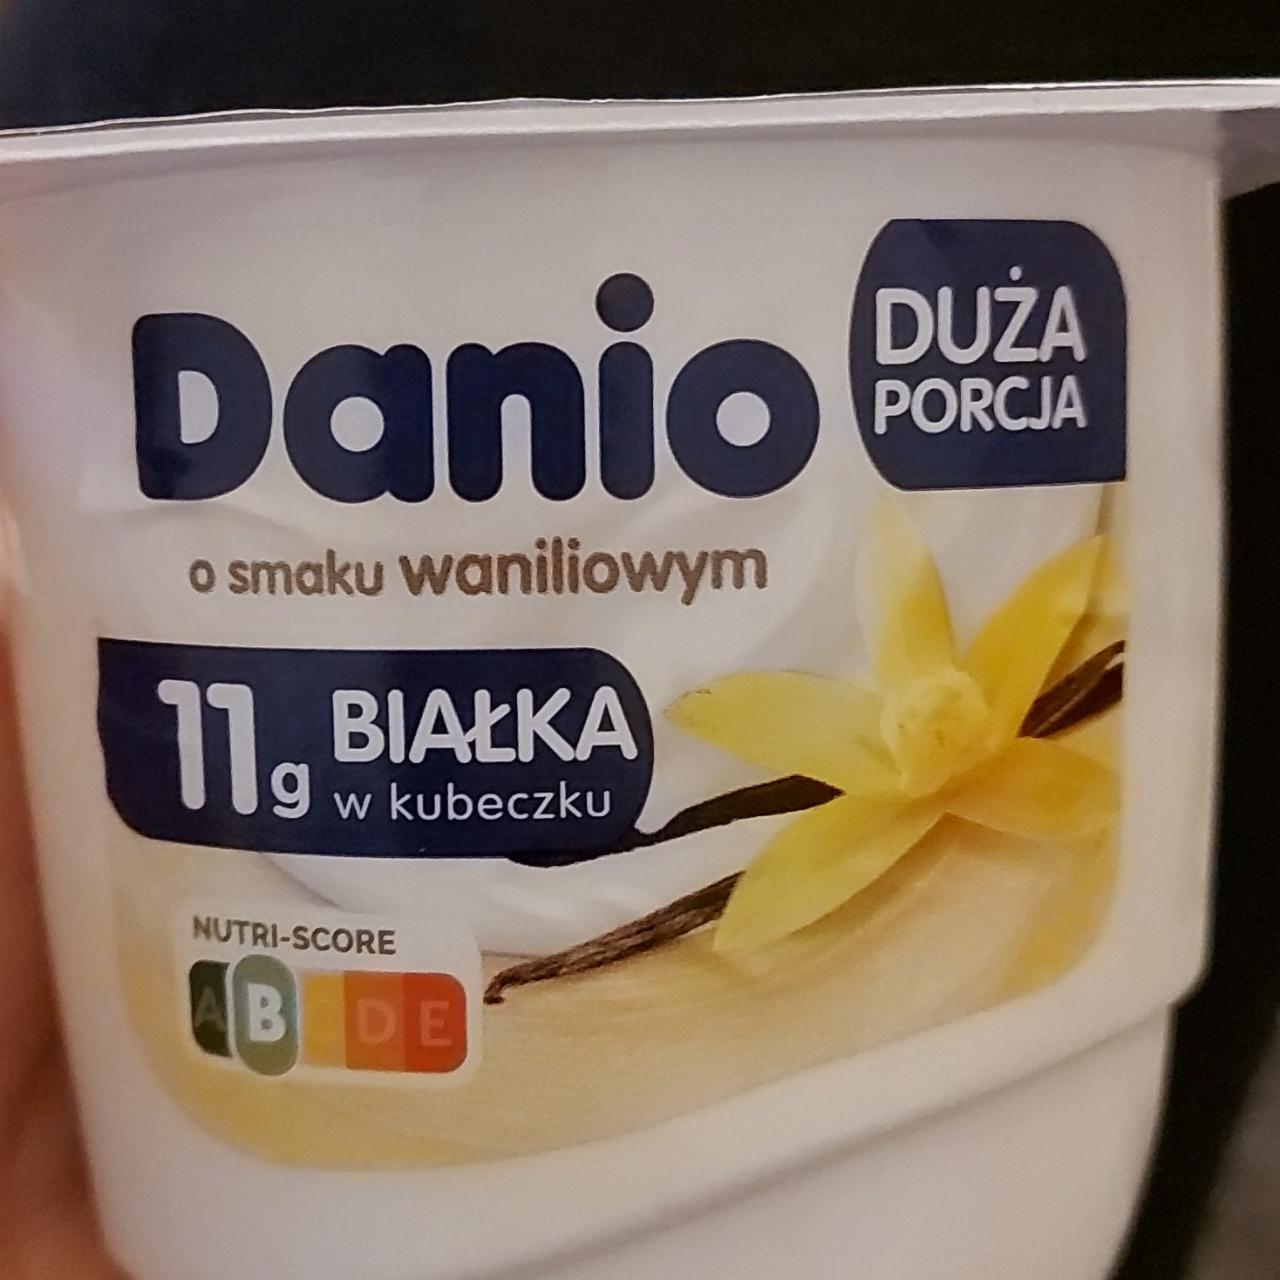 Zdjęcia - Danio Serek homogenizowany o smaku waniliowym Danone